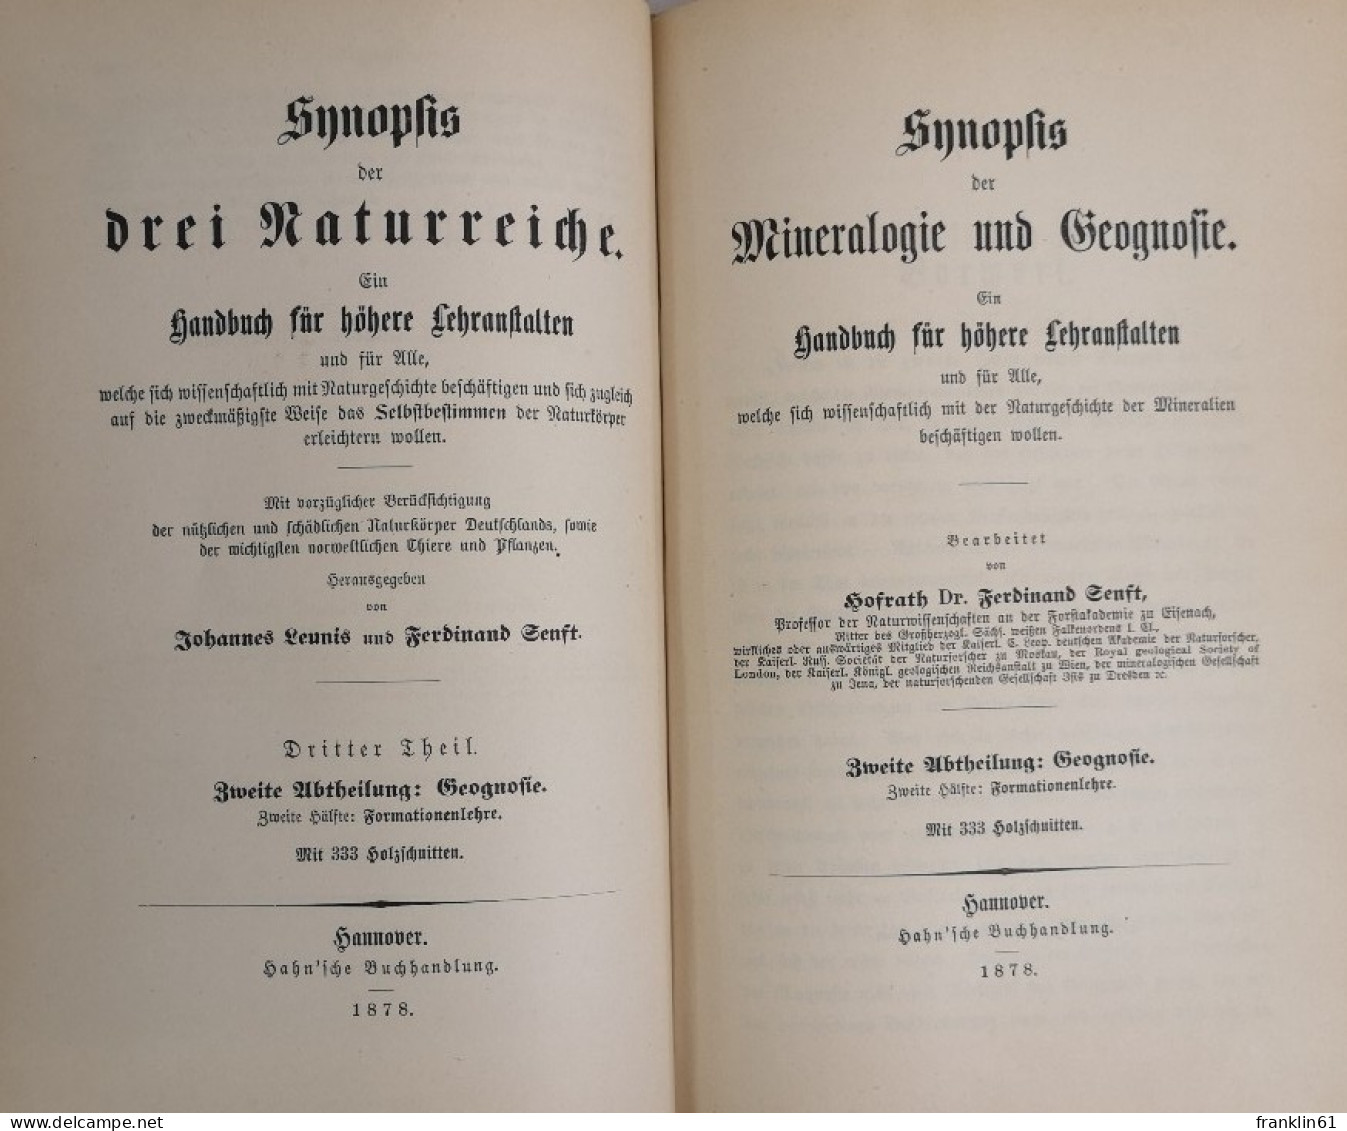 Synopsis der Mineralogie und Geografie.